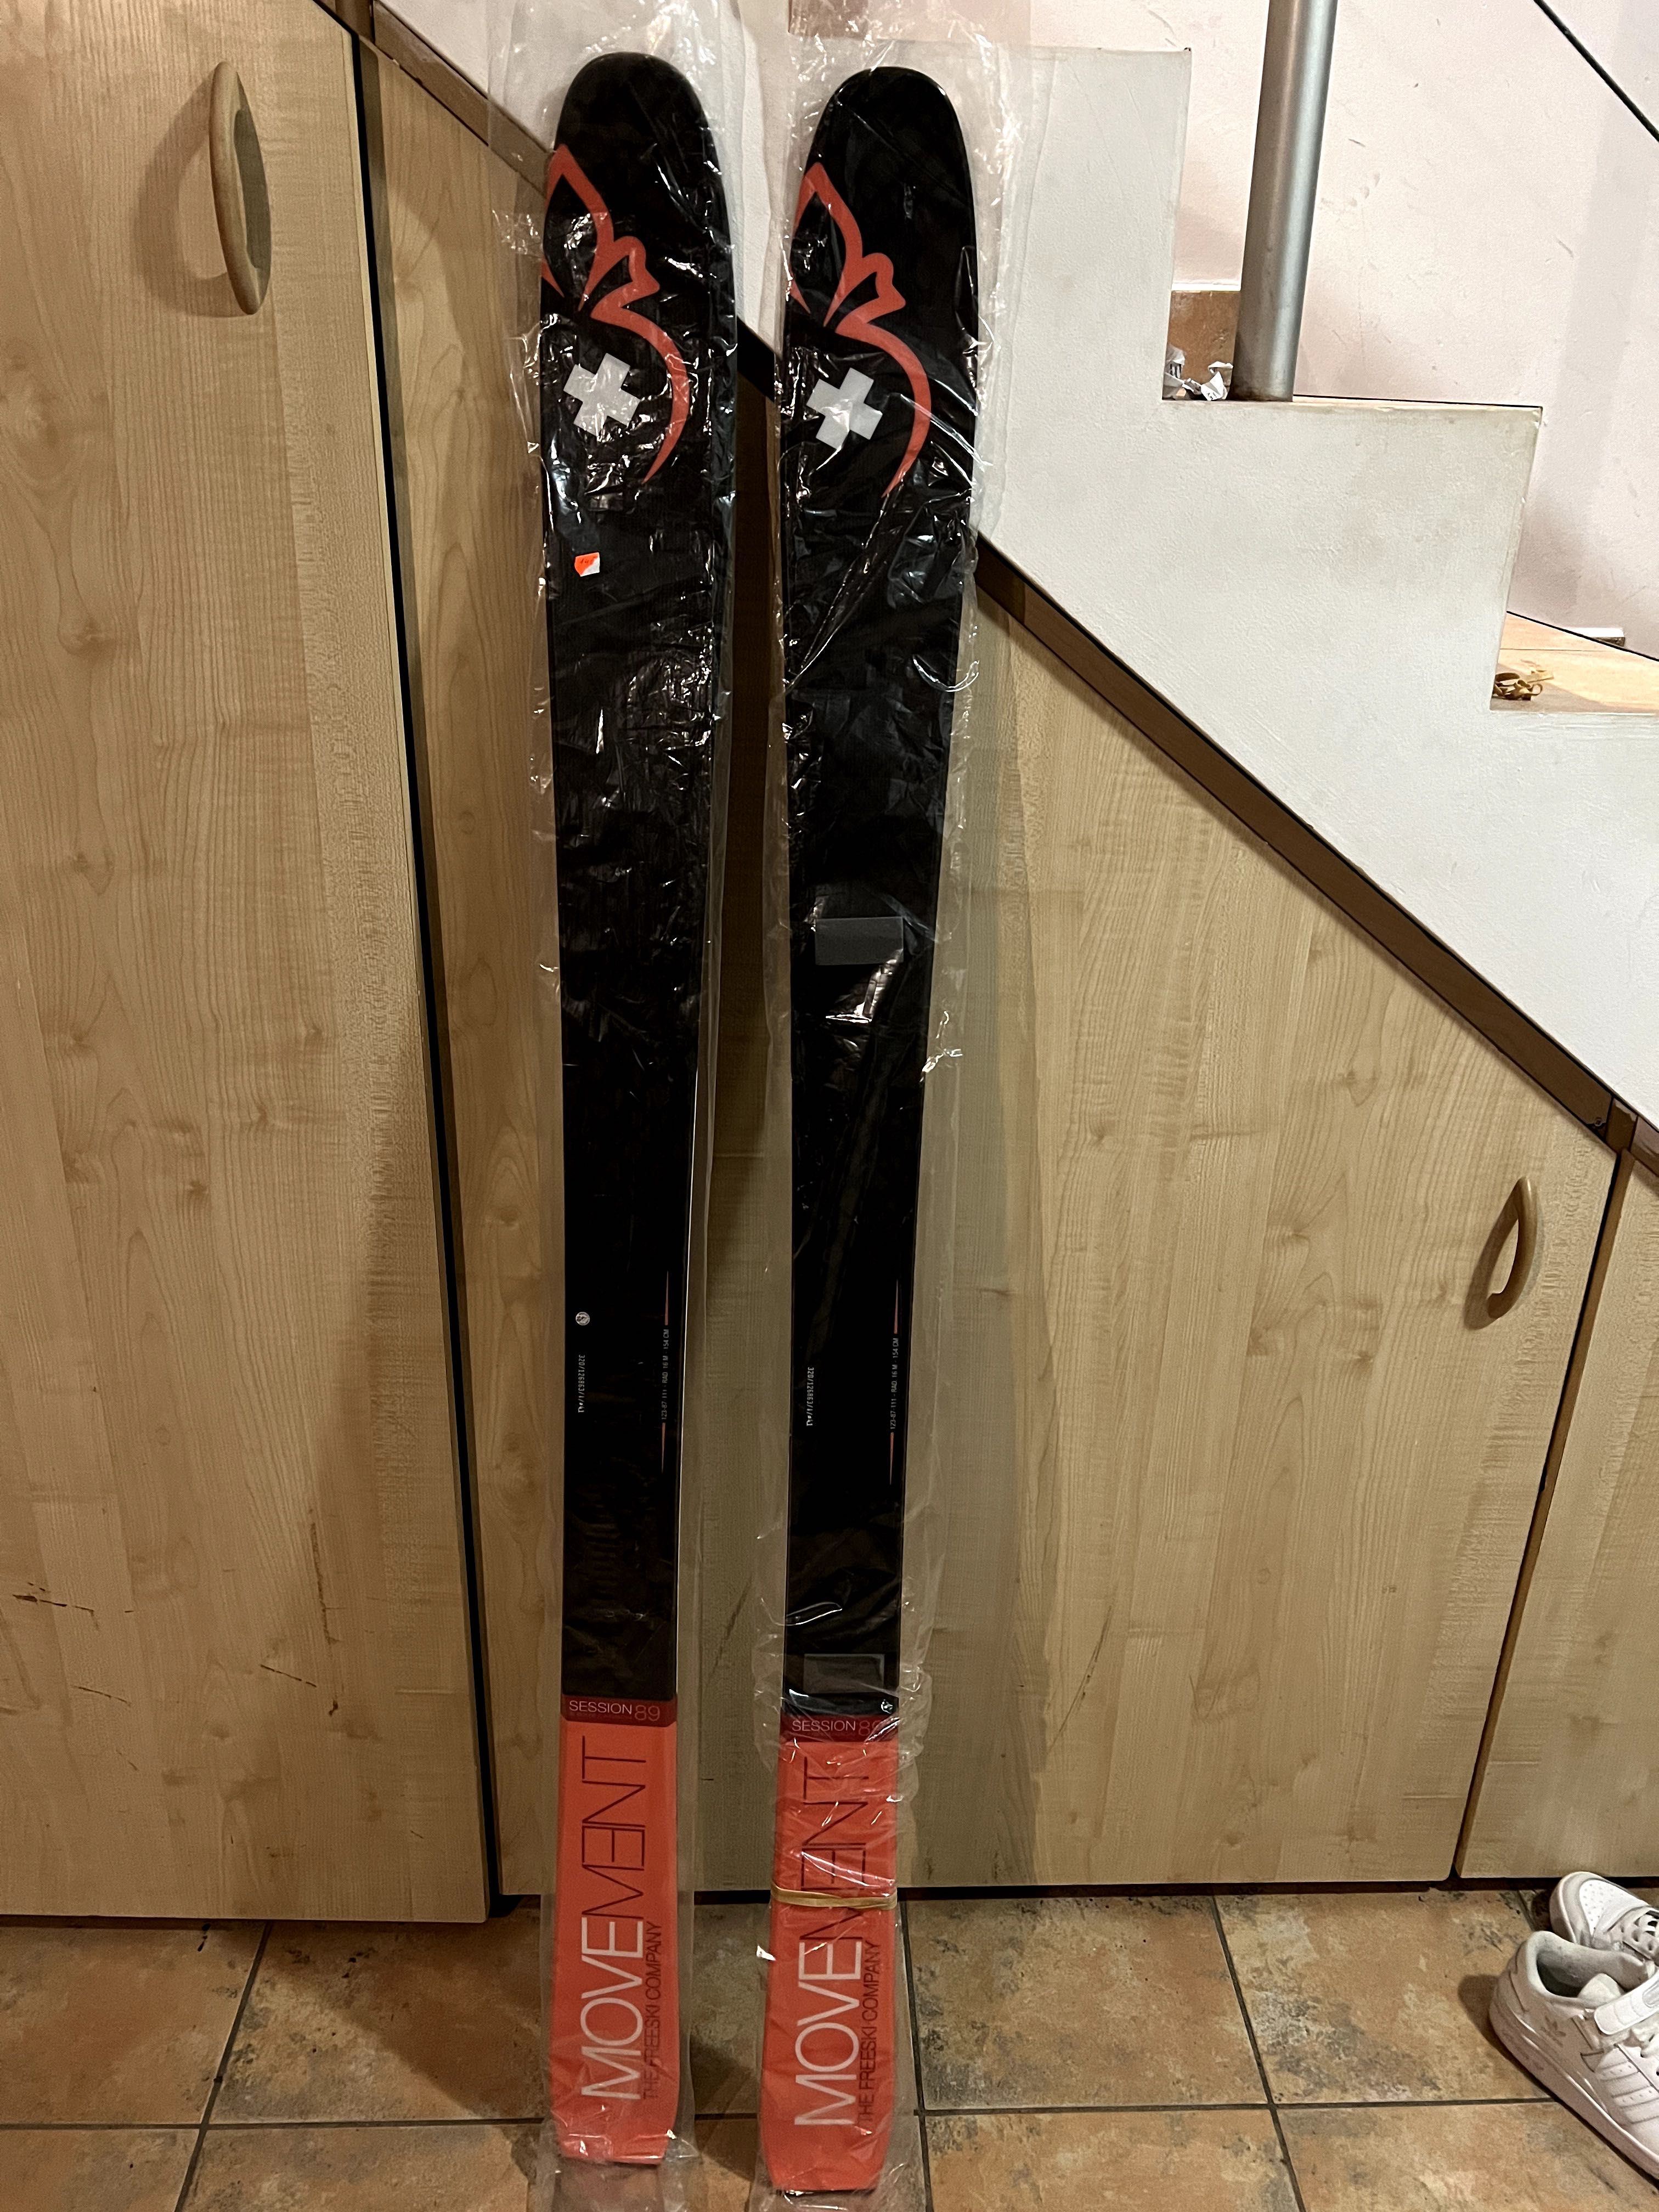 Nowe szwajcarskie narty skitour MOVEMENT SESSION 89, długość 154cm